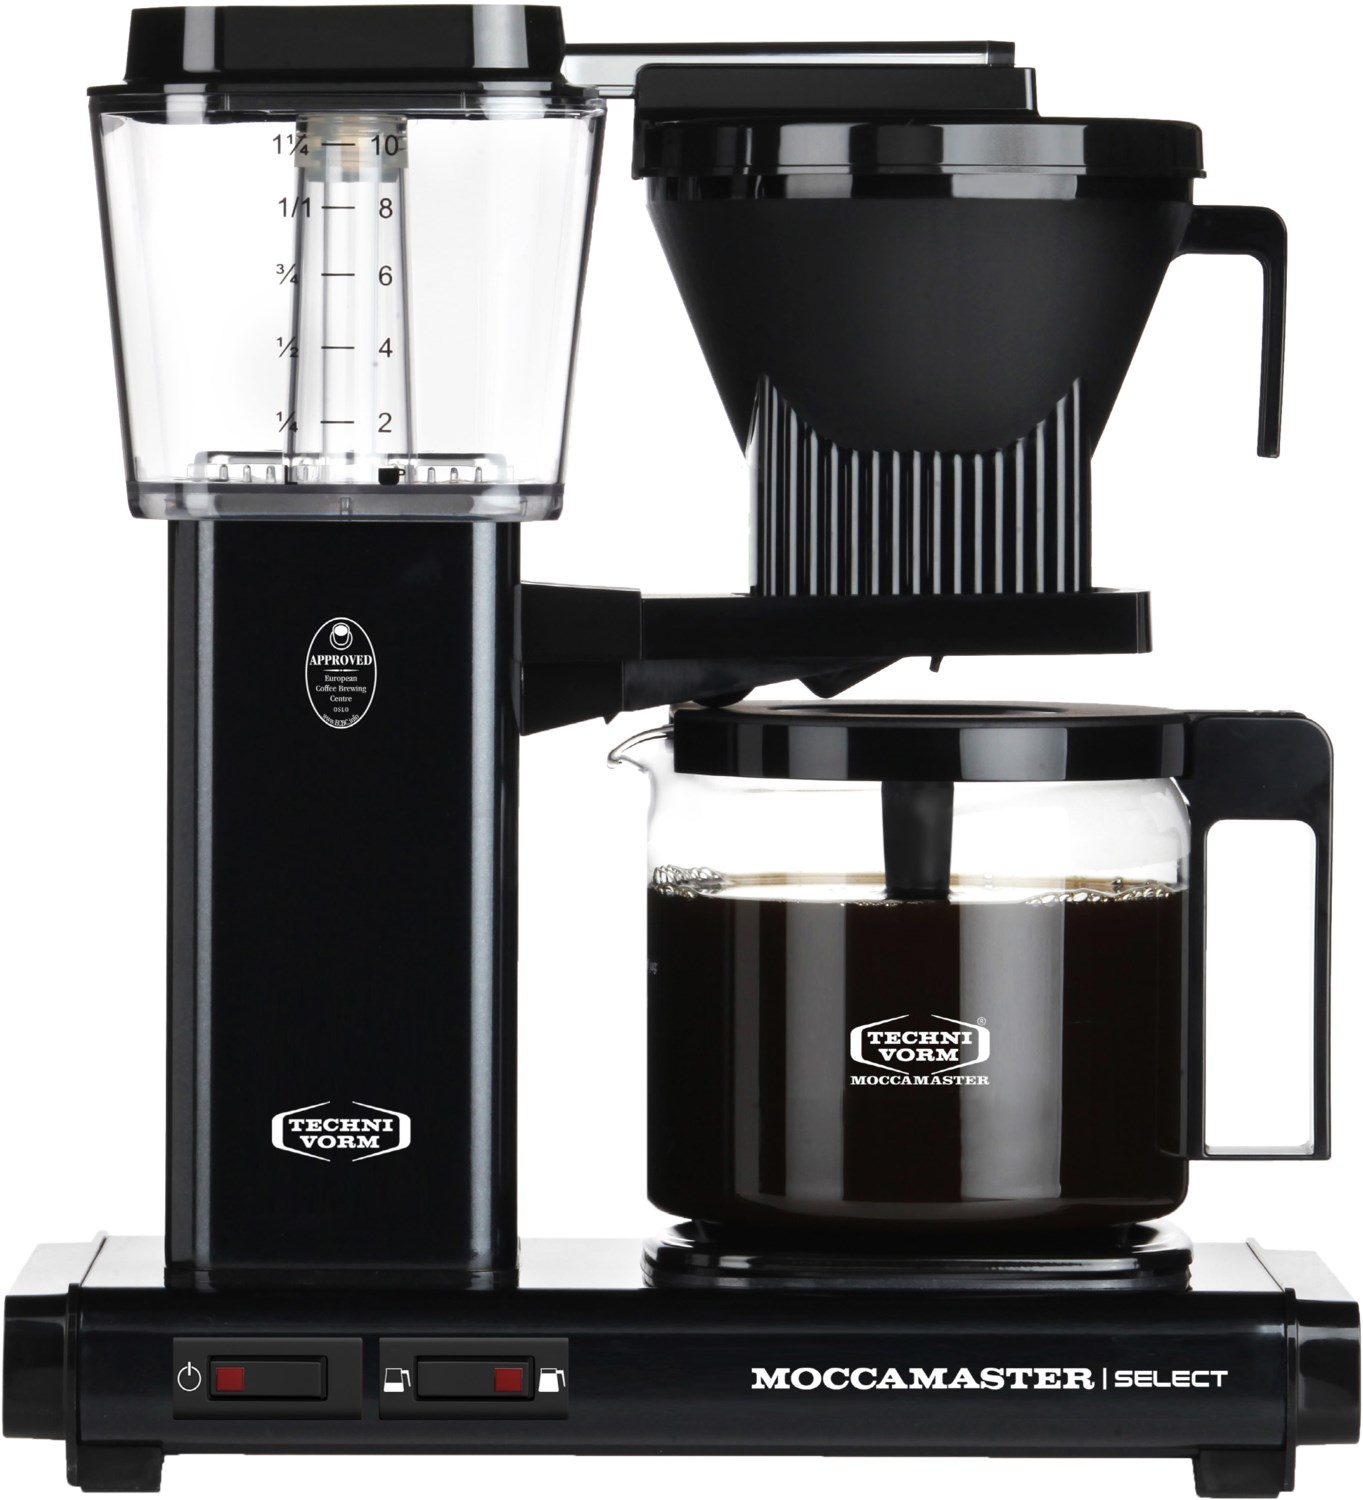 Moccamaster Kbg Select Kaffeemaschine Mit Glaskanne - Black - 32 X 17 X 36 Cm - Kannengröße: 1,25 Liter